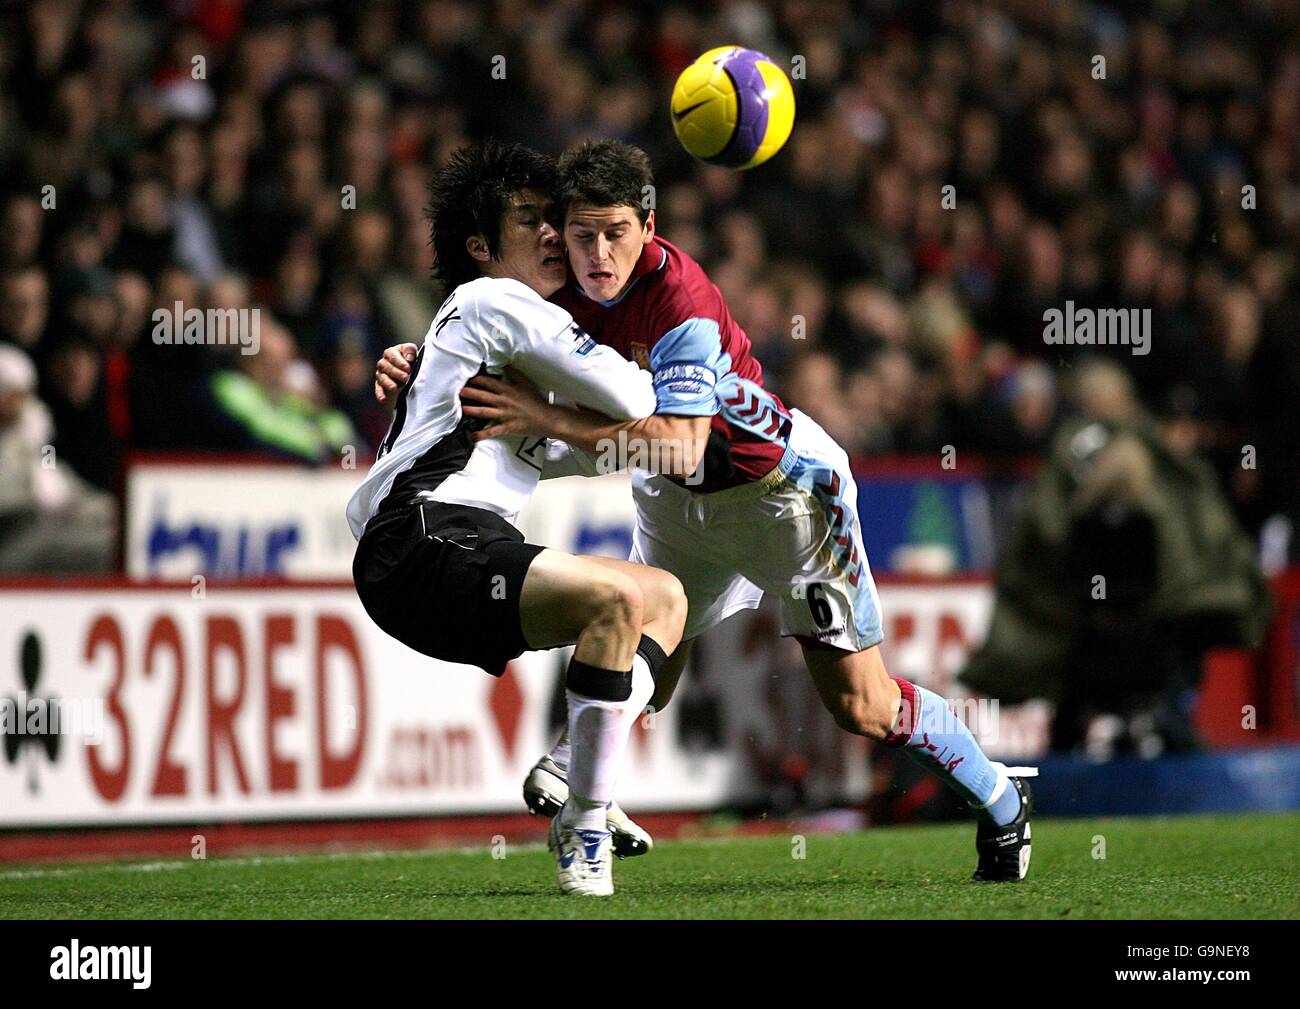 Soccer - FA Barclays Premiership - Aston Villa v Manchester United - Villa Park. Aston Villa's Gareth Barry (r) and Manchester United's Ji-Sung Park battle for the ball Stock Photo